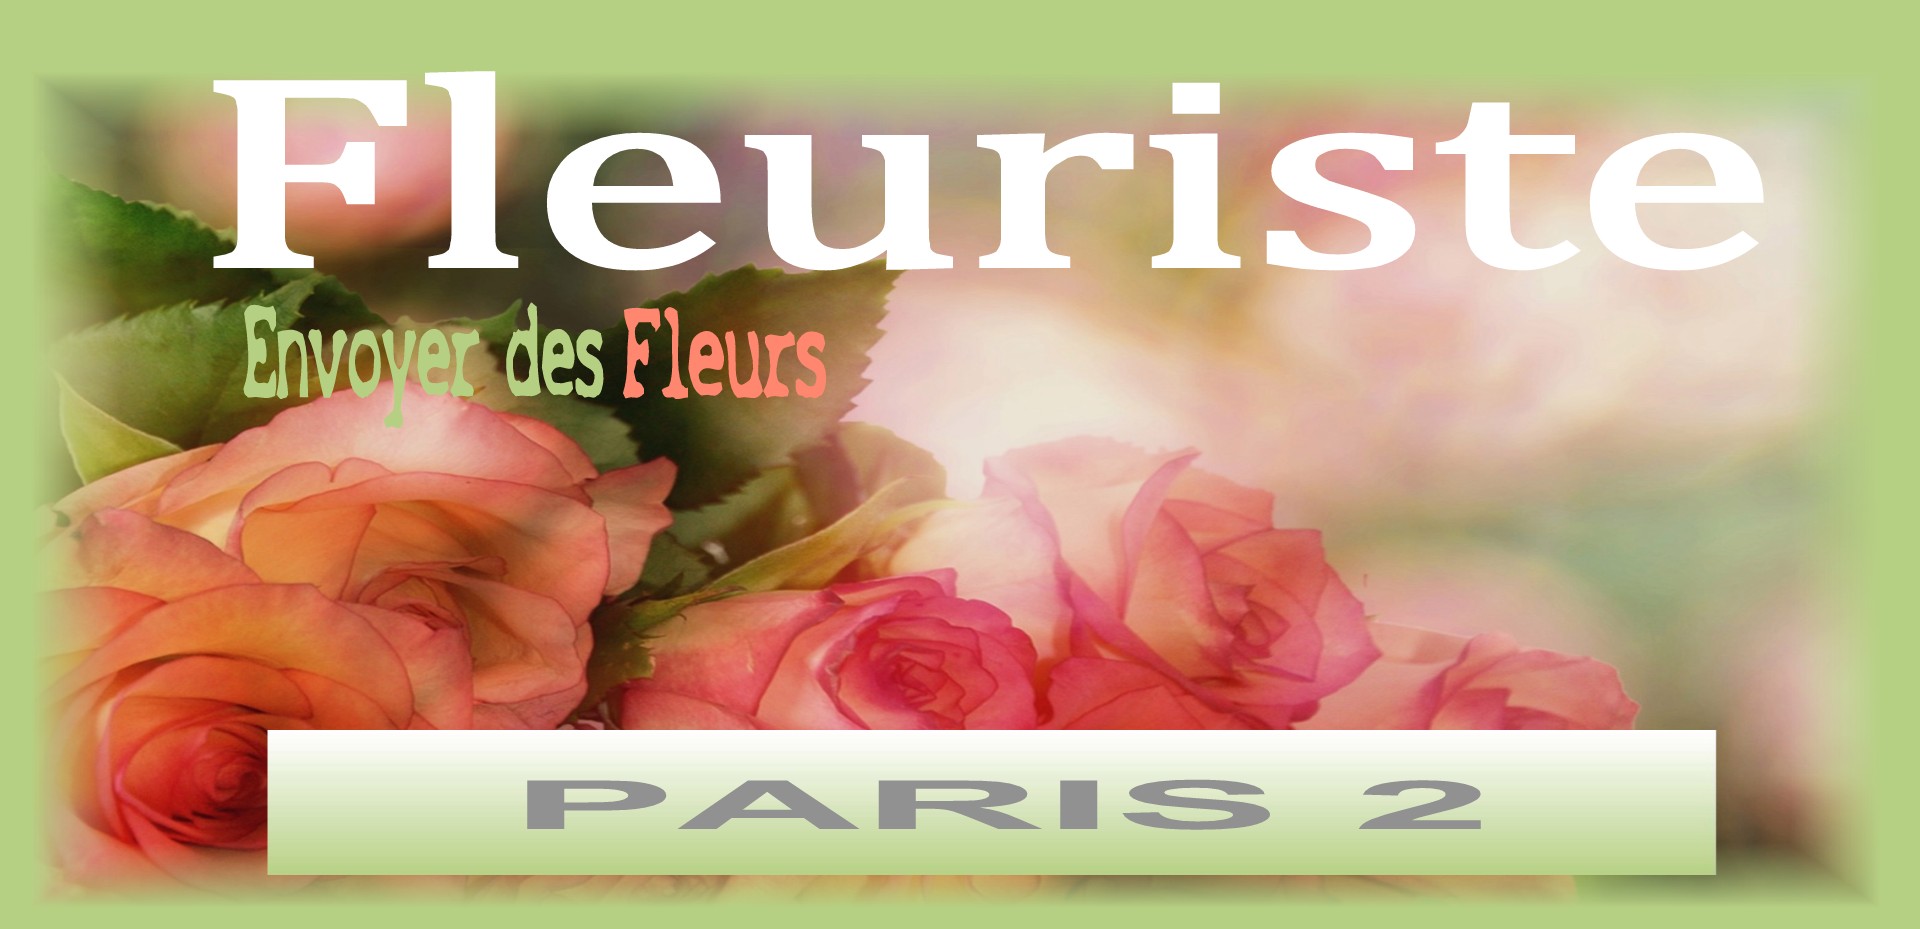 Nos fleuristes livrent des fleurs à PARIS 2 - Envoyer des fleurs